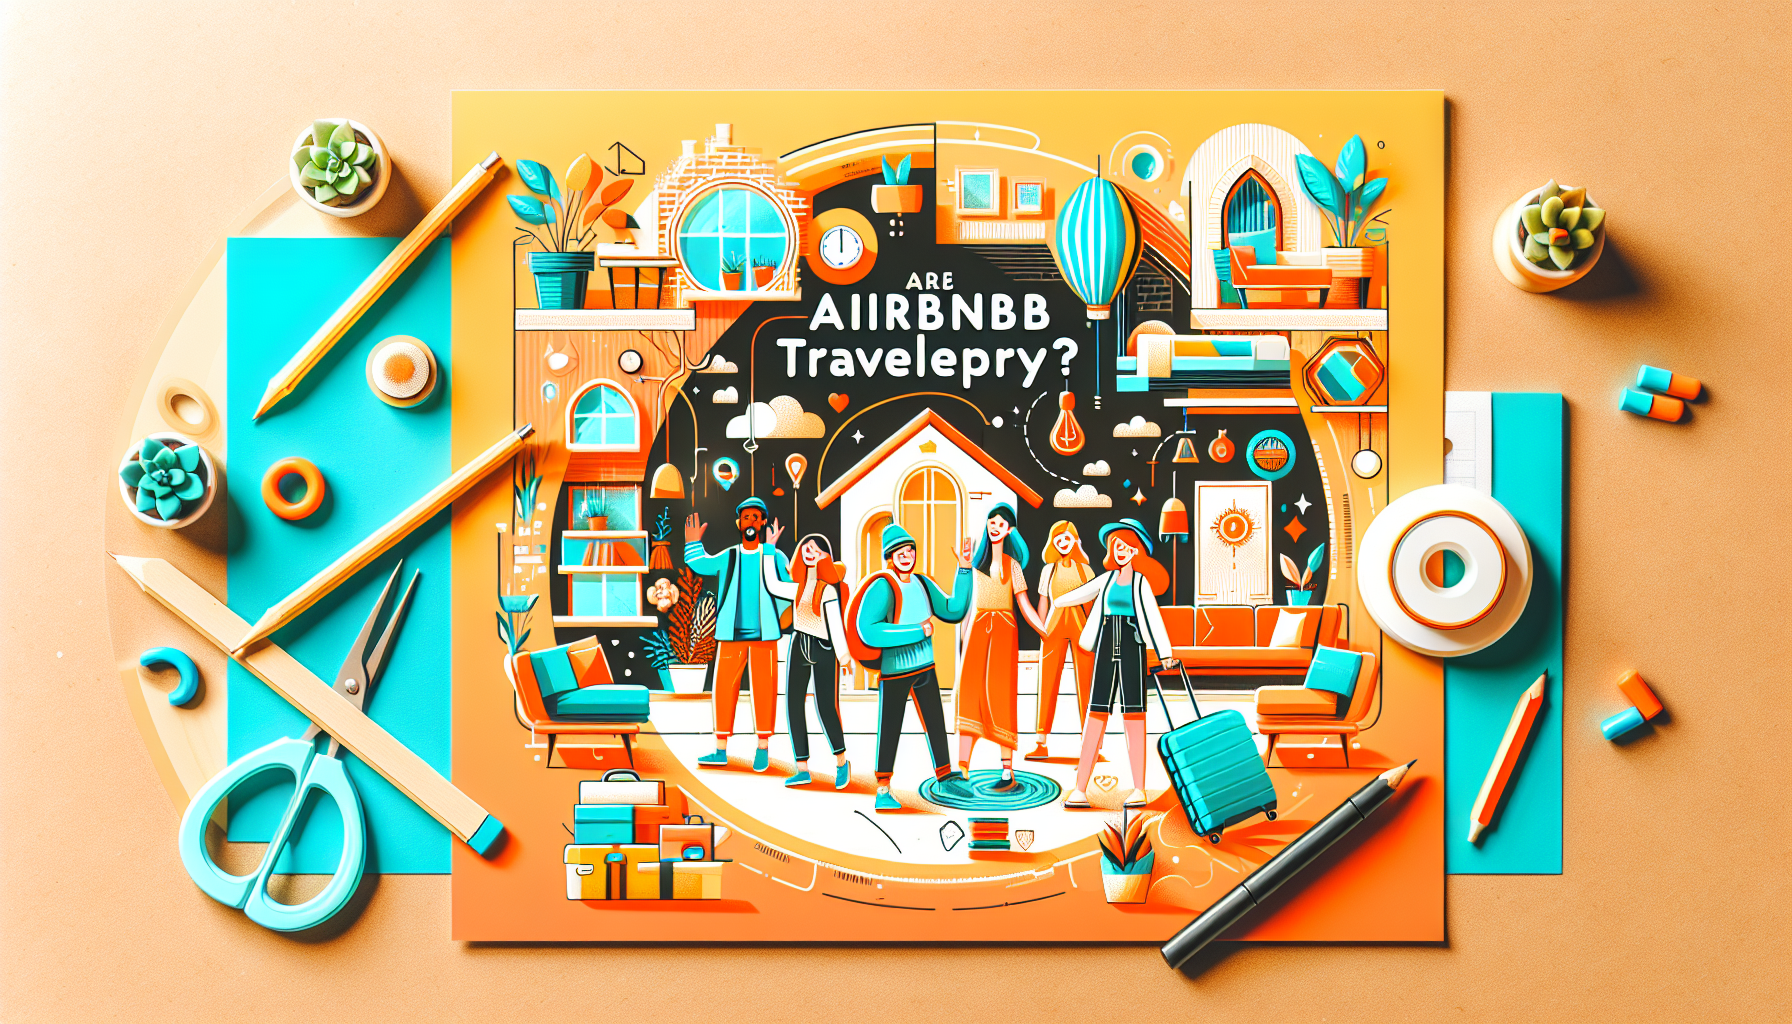 découvrez si les voyageurs sont satisfaits de leur séjour sur airbnb. évaluations, témoignages et avis sur les expériences utilisateurs.